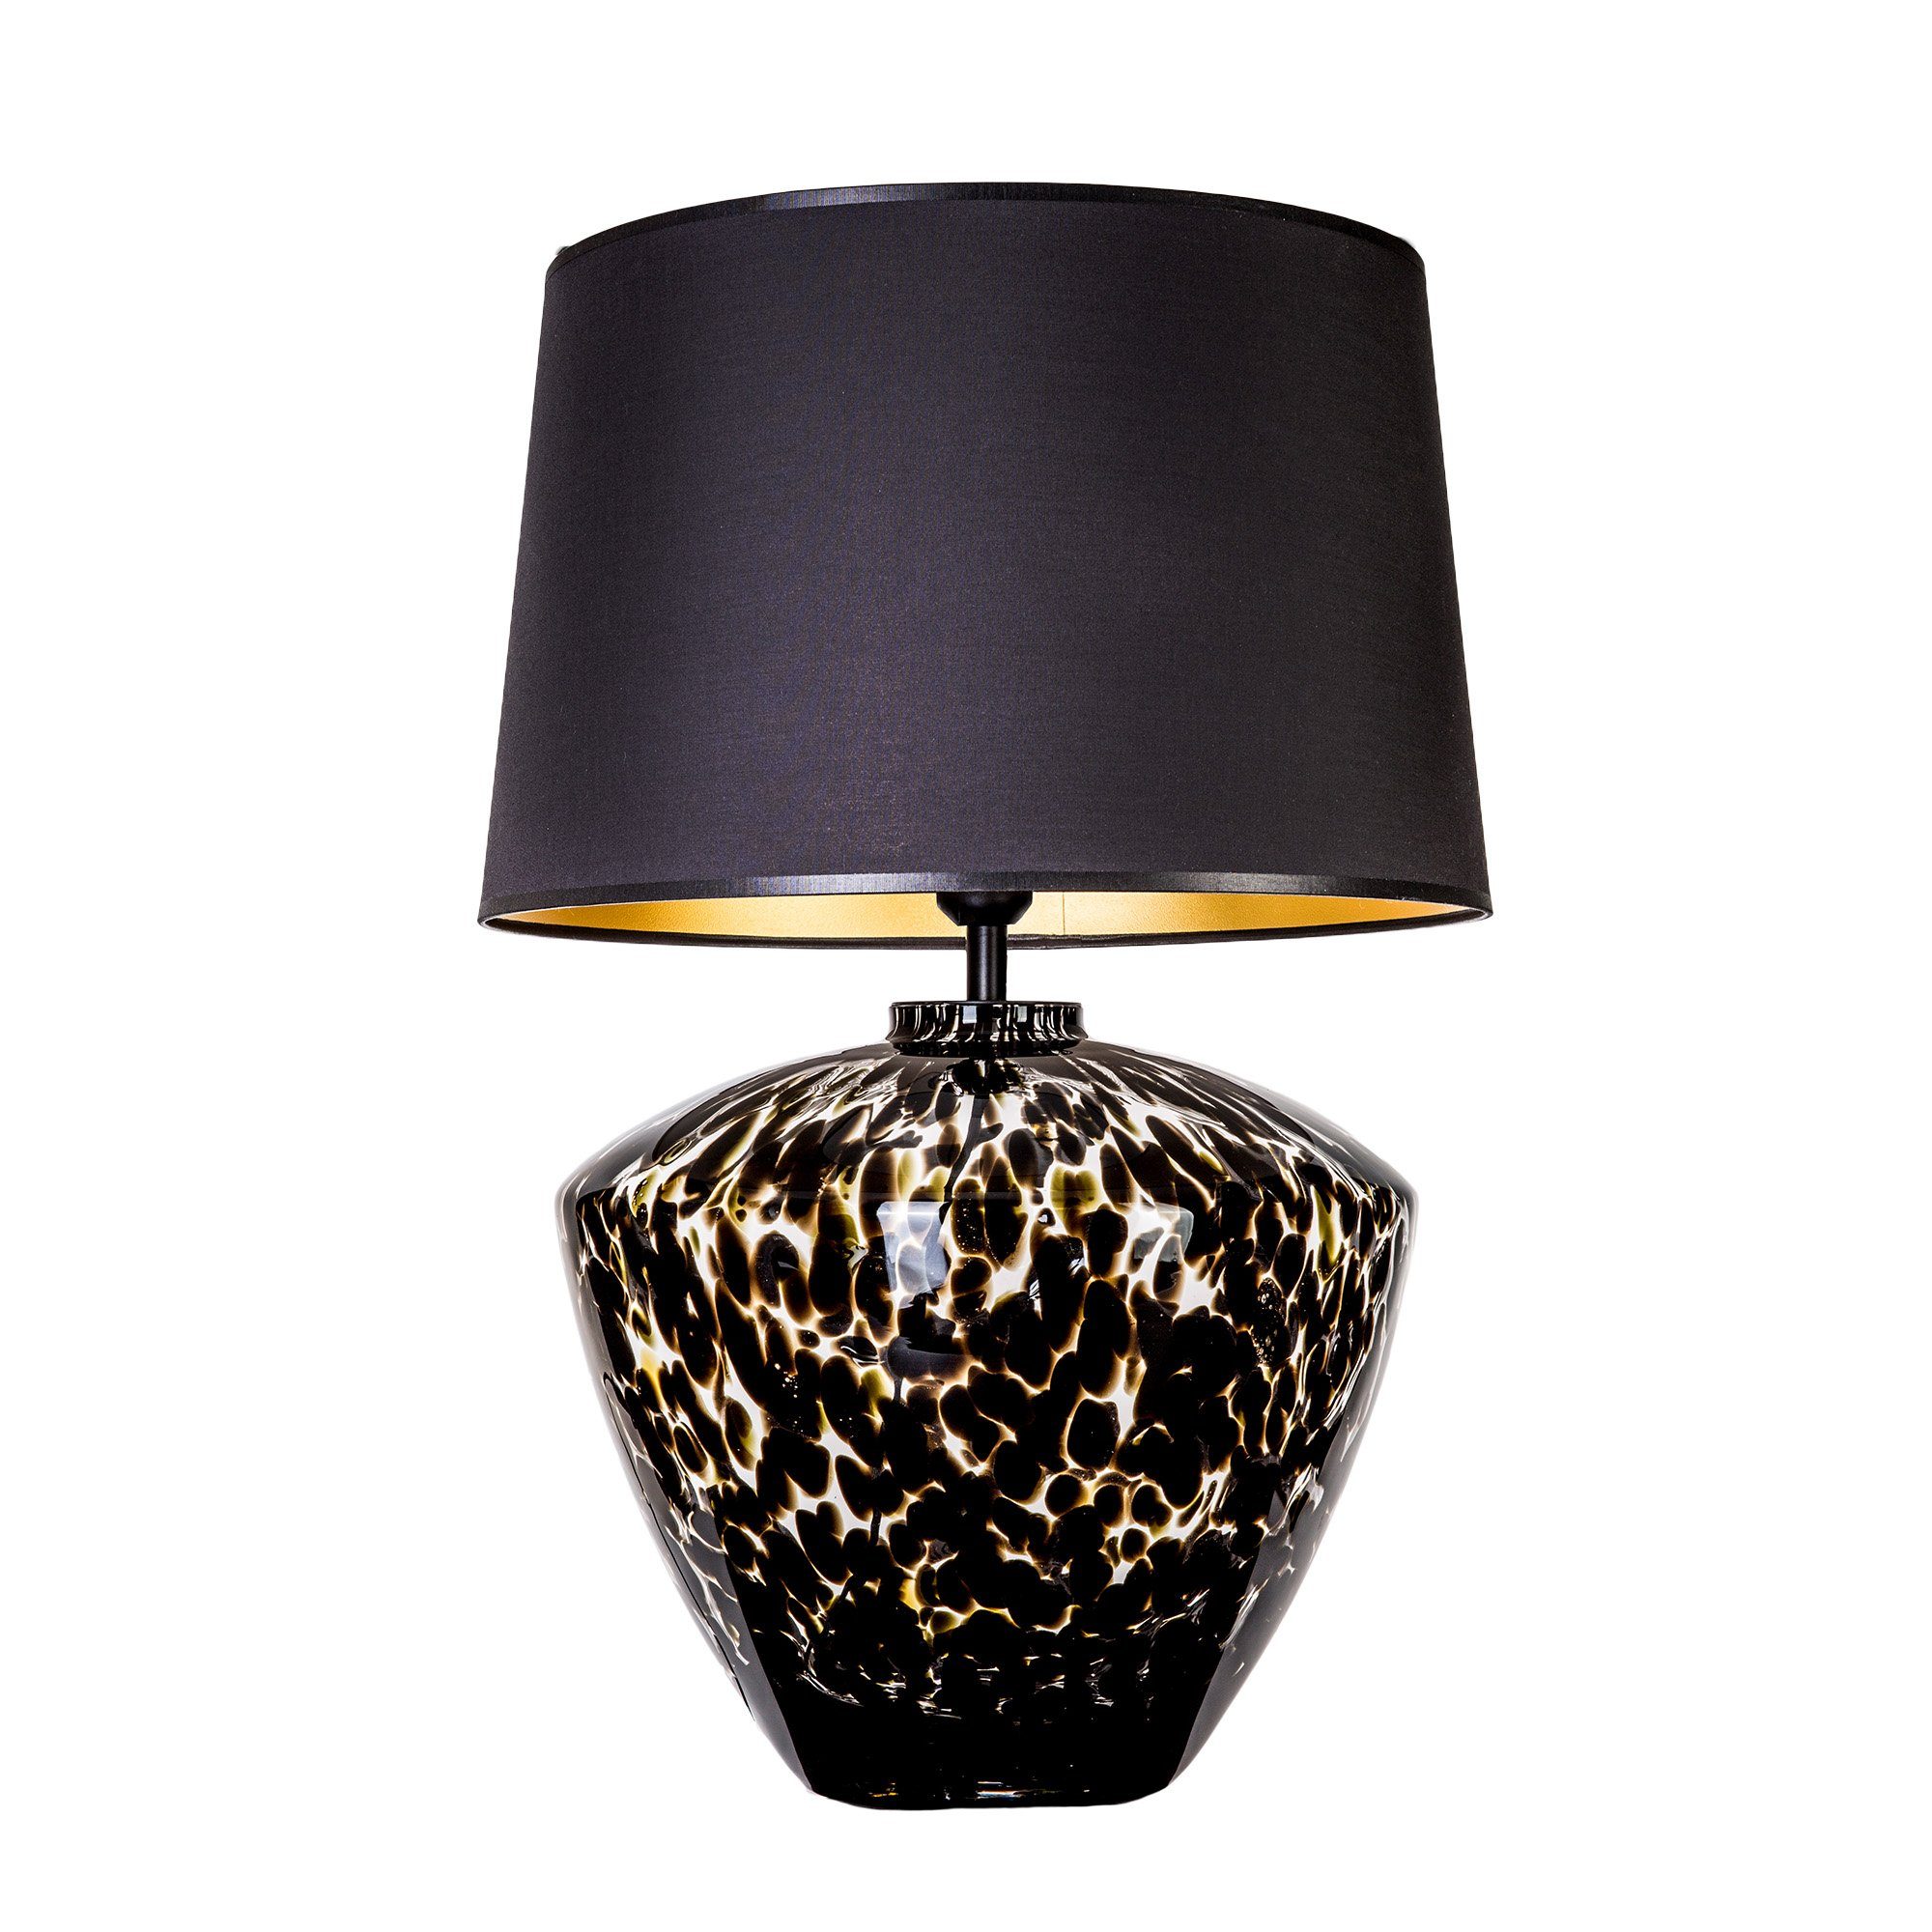 Lampenschirm Collection Glaslampe Leuchtmittel, Glas Signature schwarz, gefleckt mit Tischlampe Glas Tischleuchte Warmweiß, Home mundgeblasenes ohne